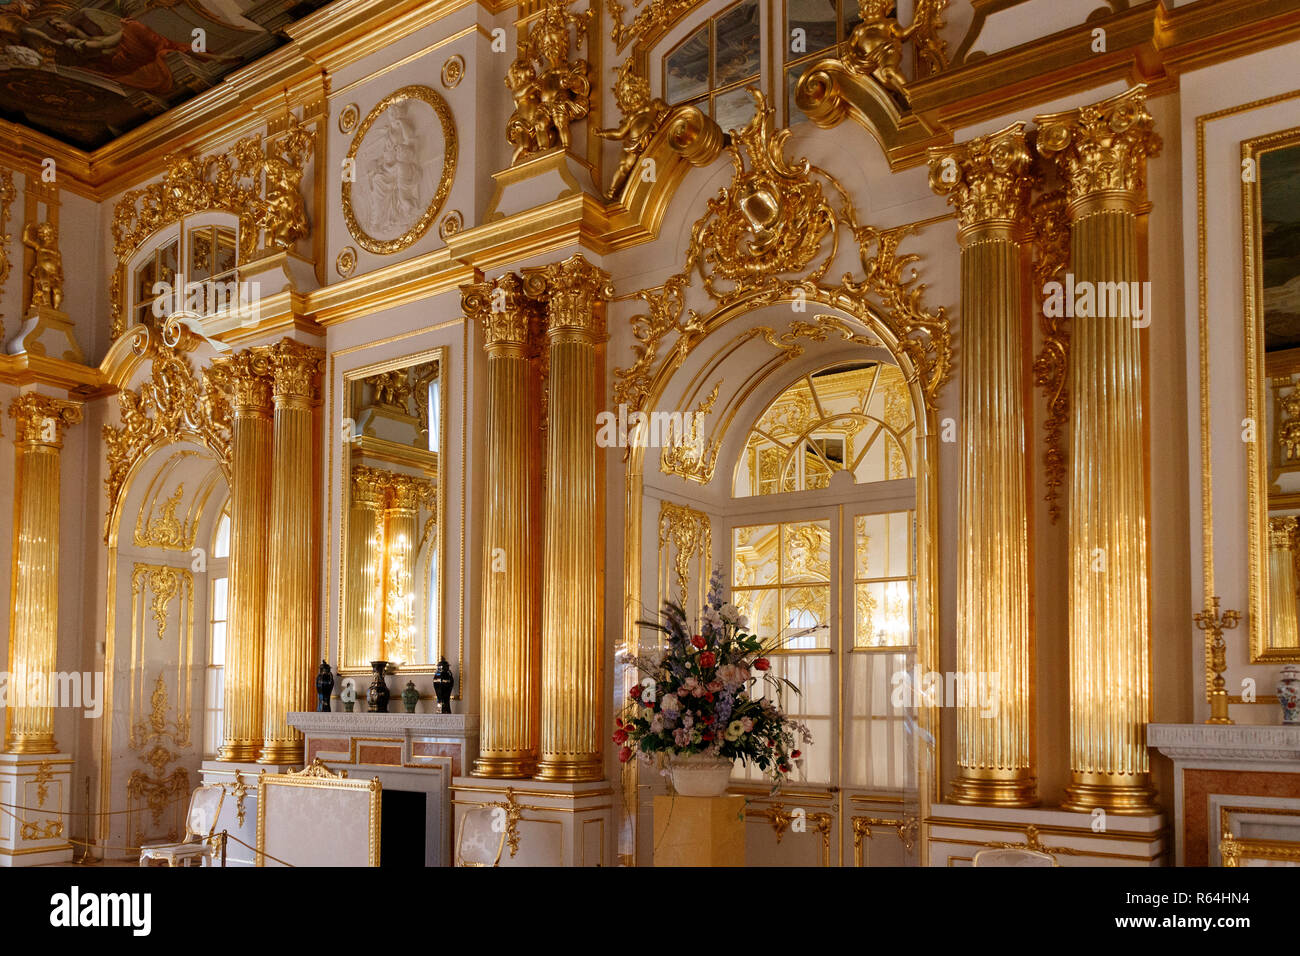 Gli interni ornati in stile rococò di decorazione del palazzo Catherines, Carskoe Selo, San Pietroburgo, Russia. Foto Stock